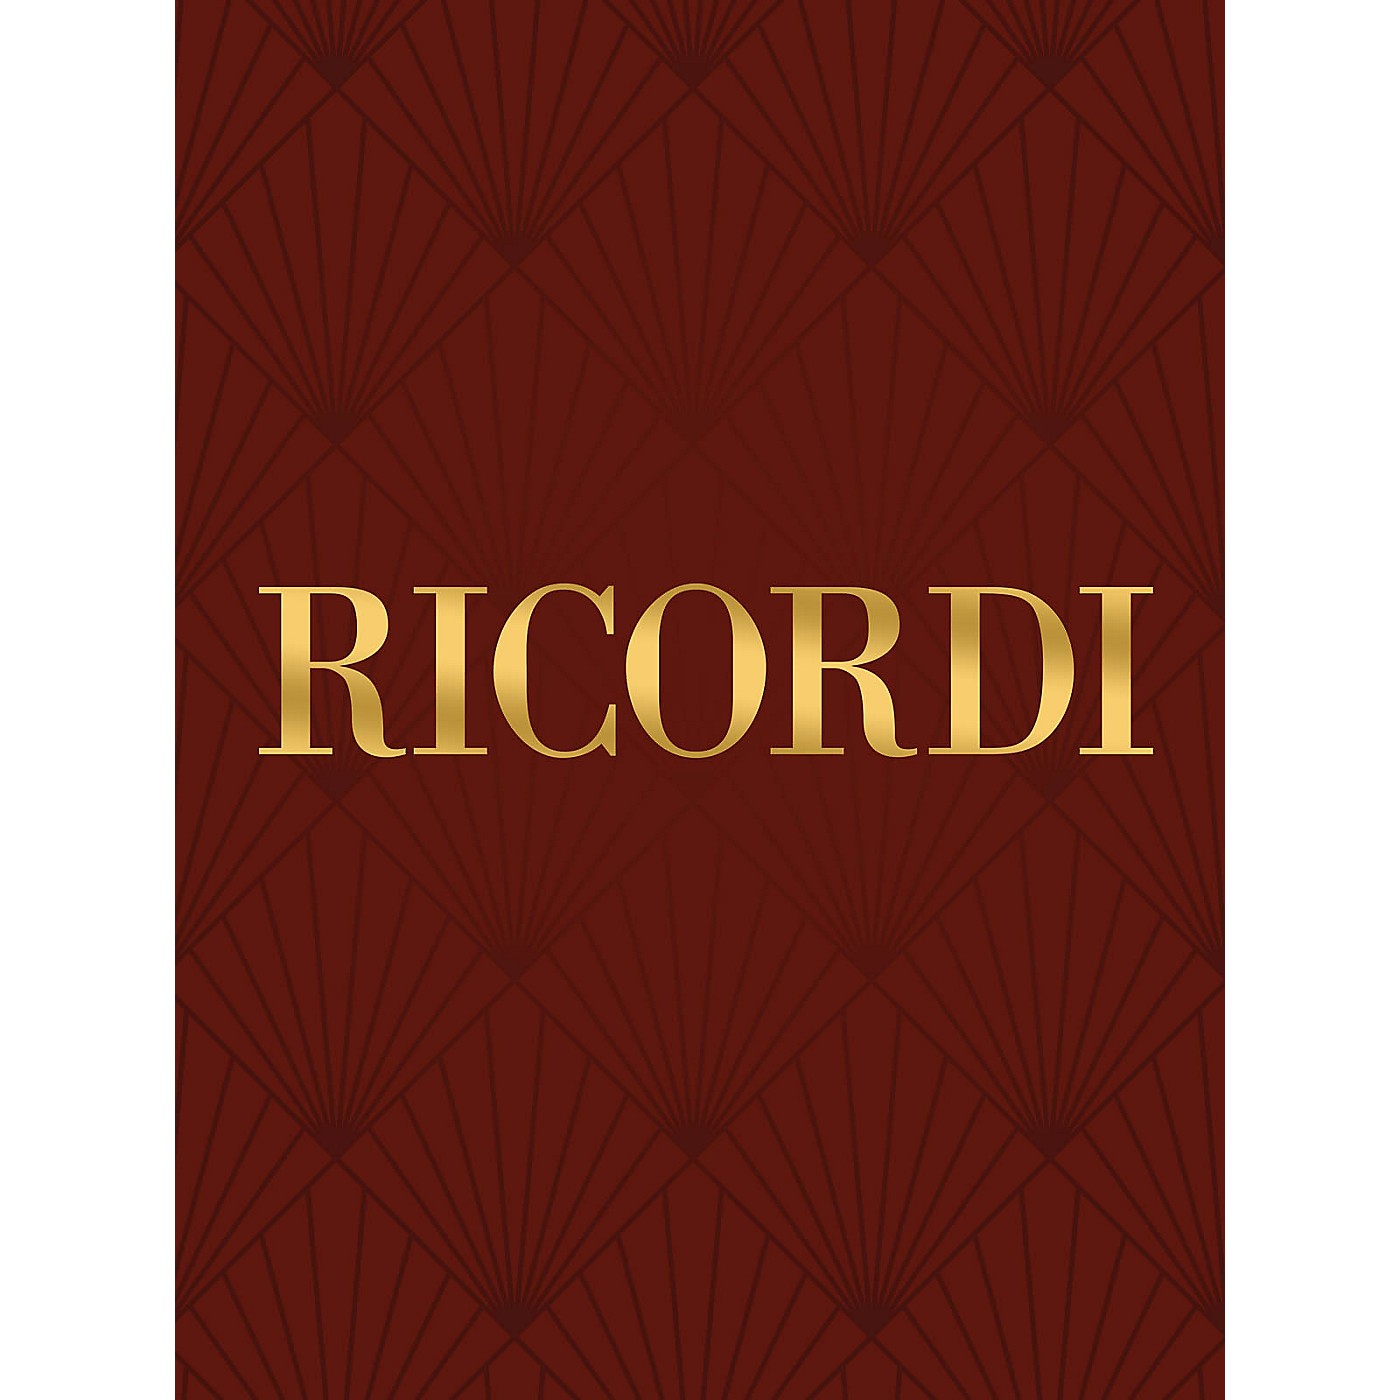 Ricordi Tito Manlio, RV 738 Vocal Score Series Softcover  by Antonio Vivaldi Edited by Alessandro Borin thumbnail